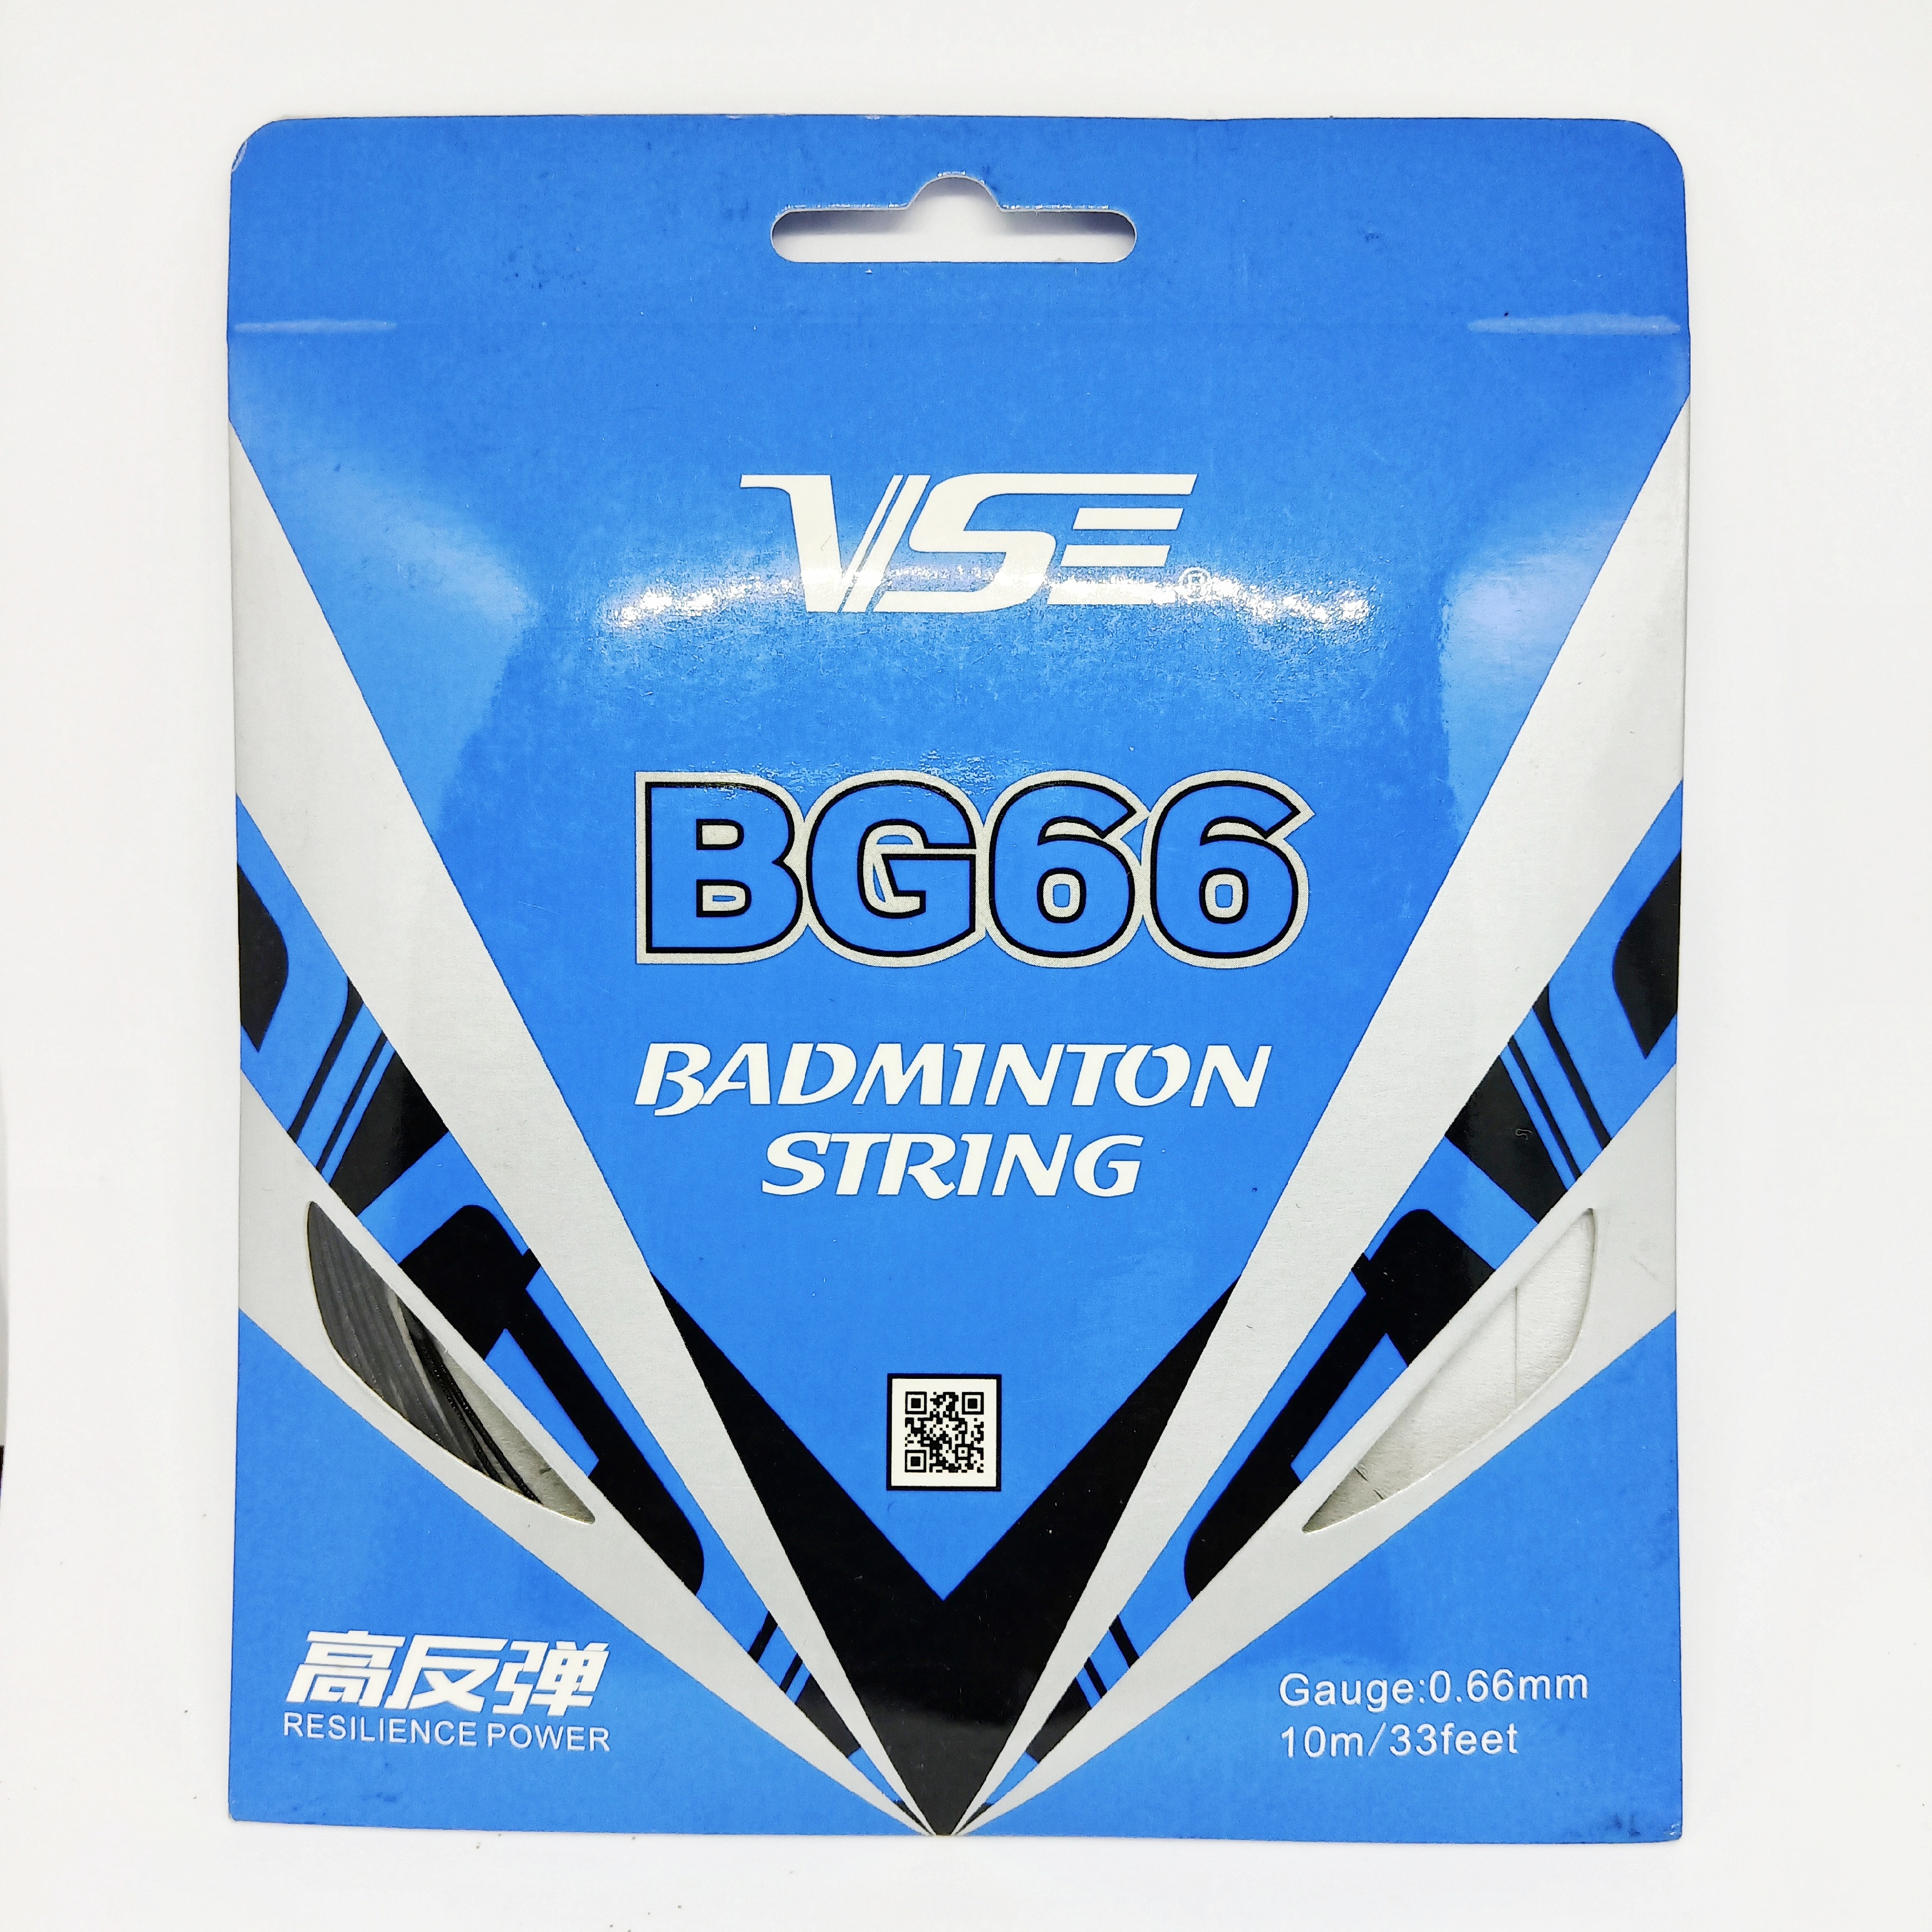 เอ็นแบดมินตัน Badminton string VS BG66